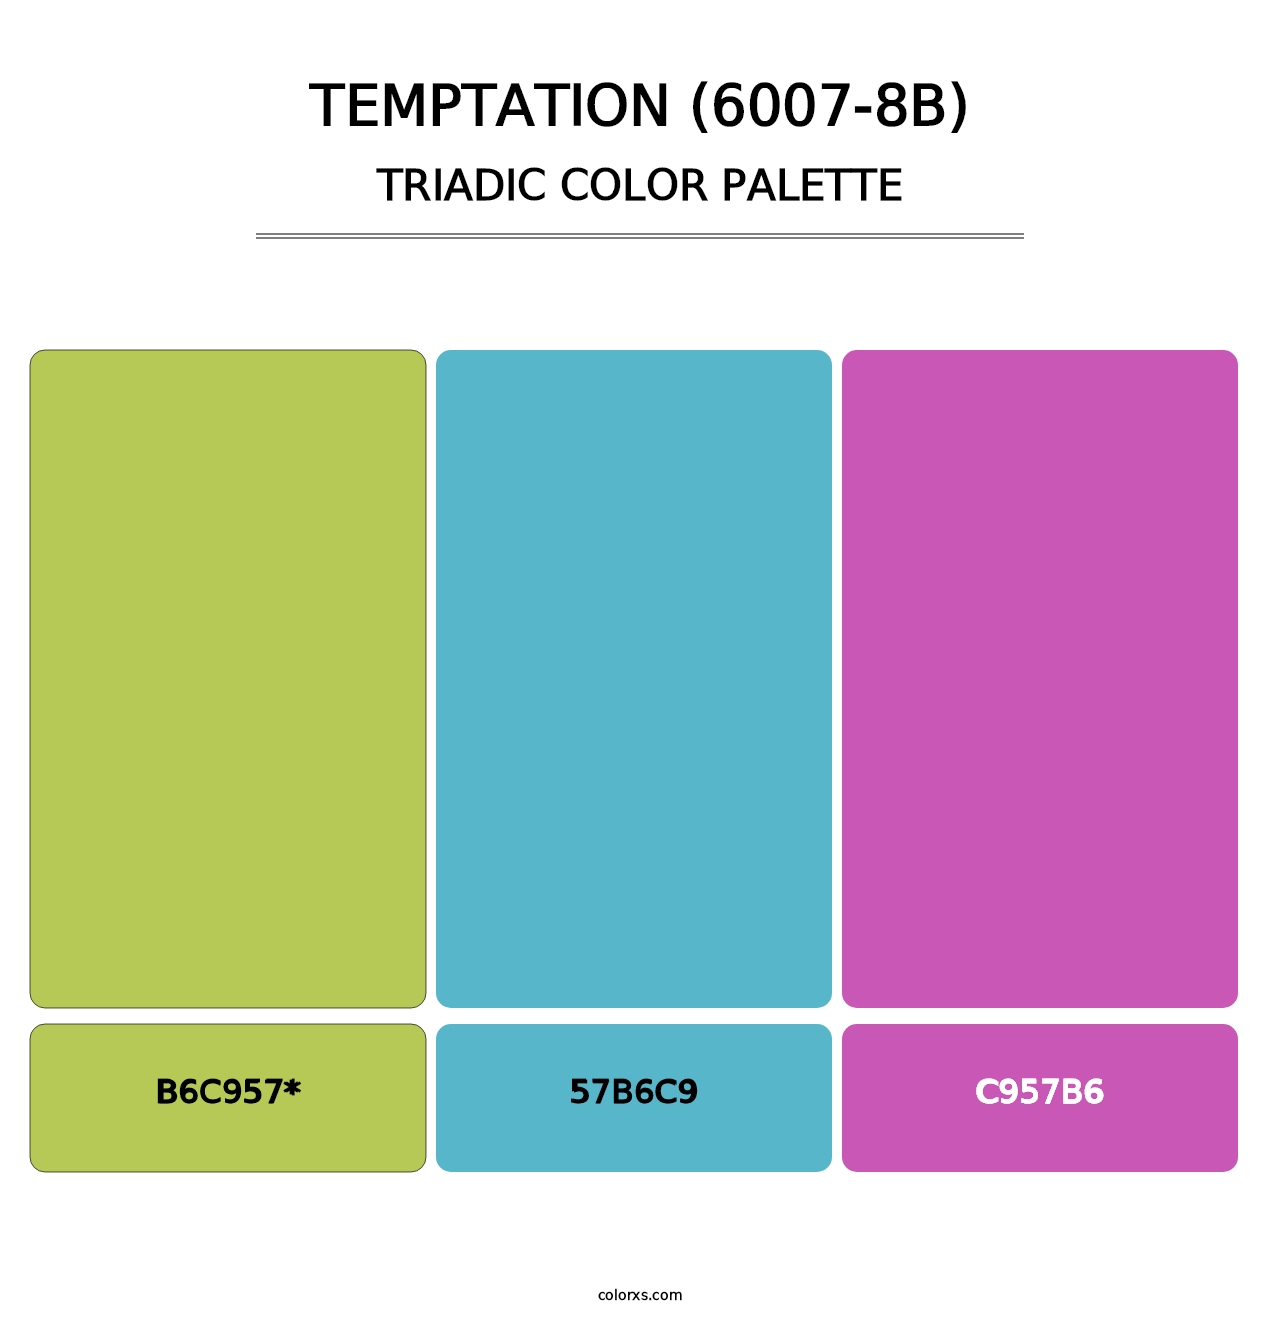 Temptation (6007-8B) - Triadic Color Palette